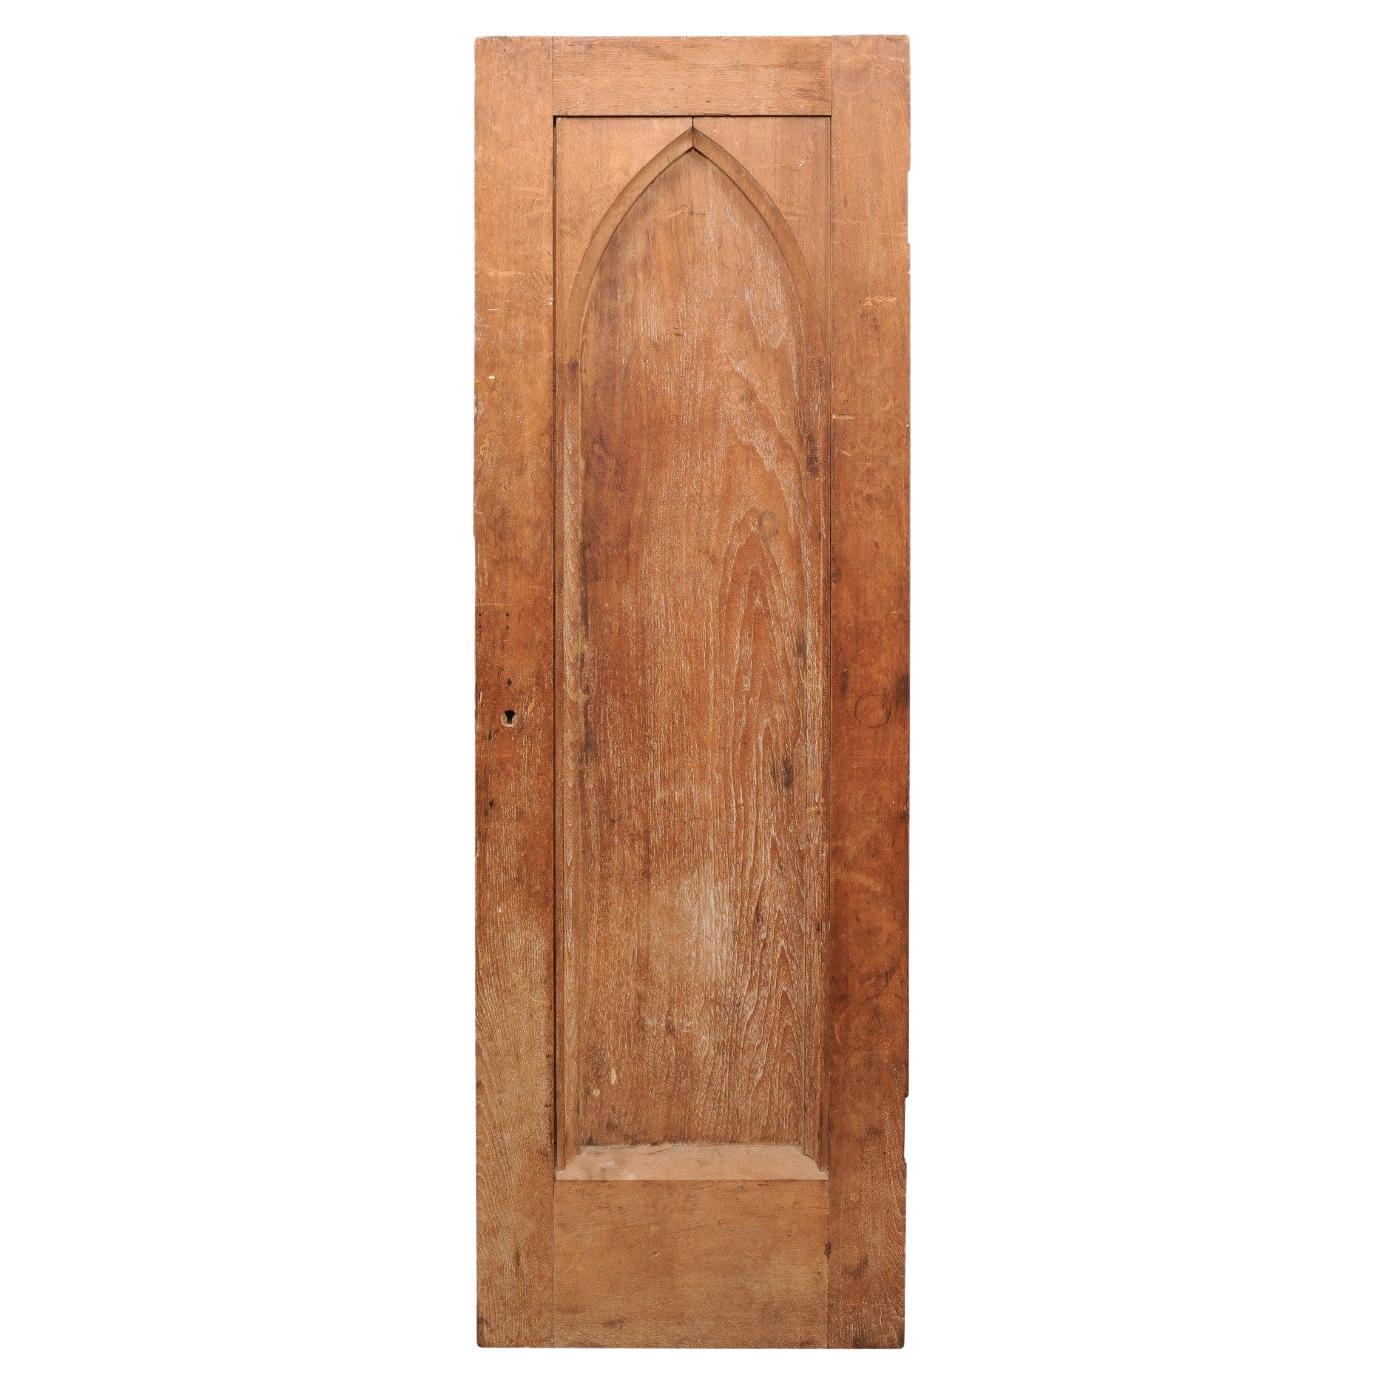  Holztür aus dem späten 19. Jahrhundert mit Bogendetails im gotischen Stil